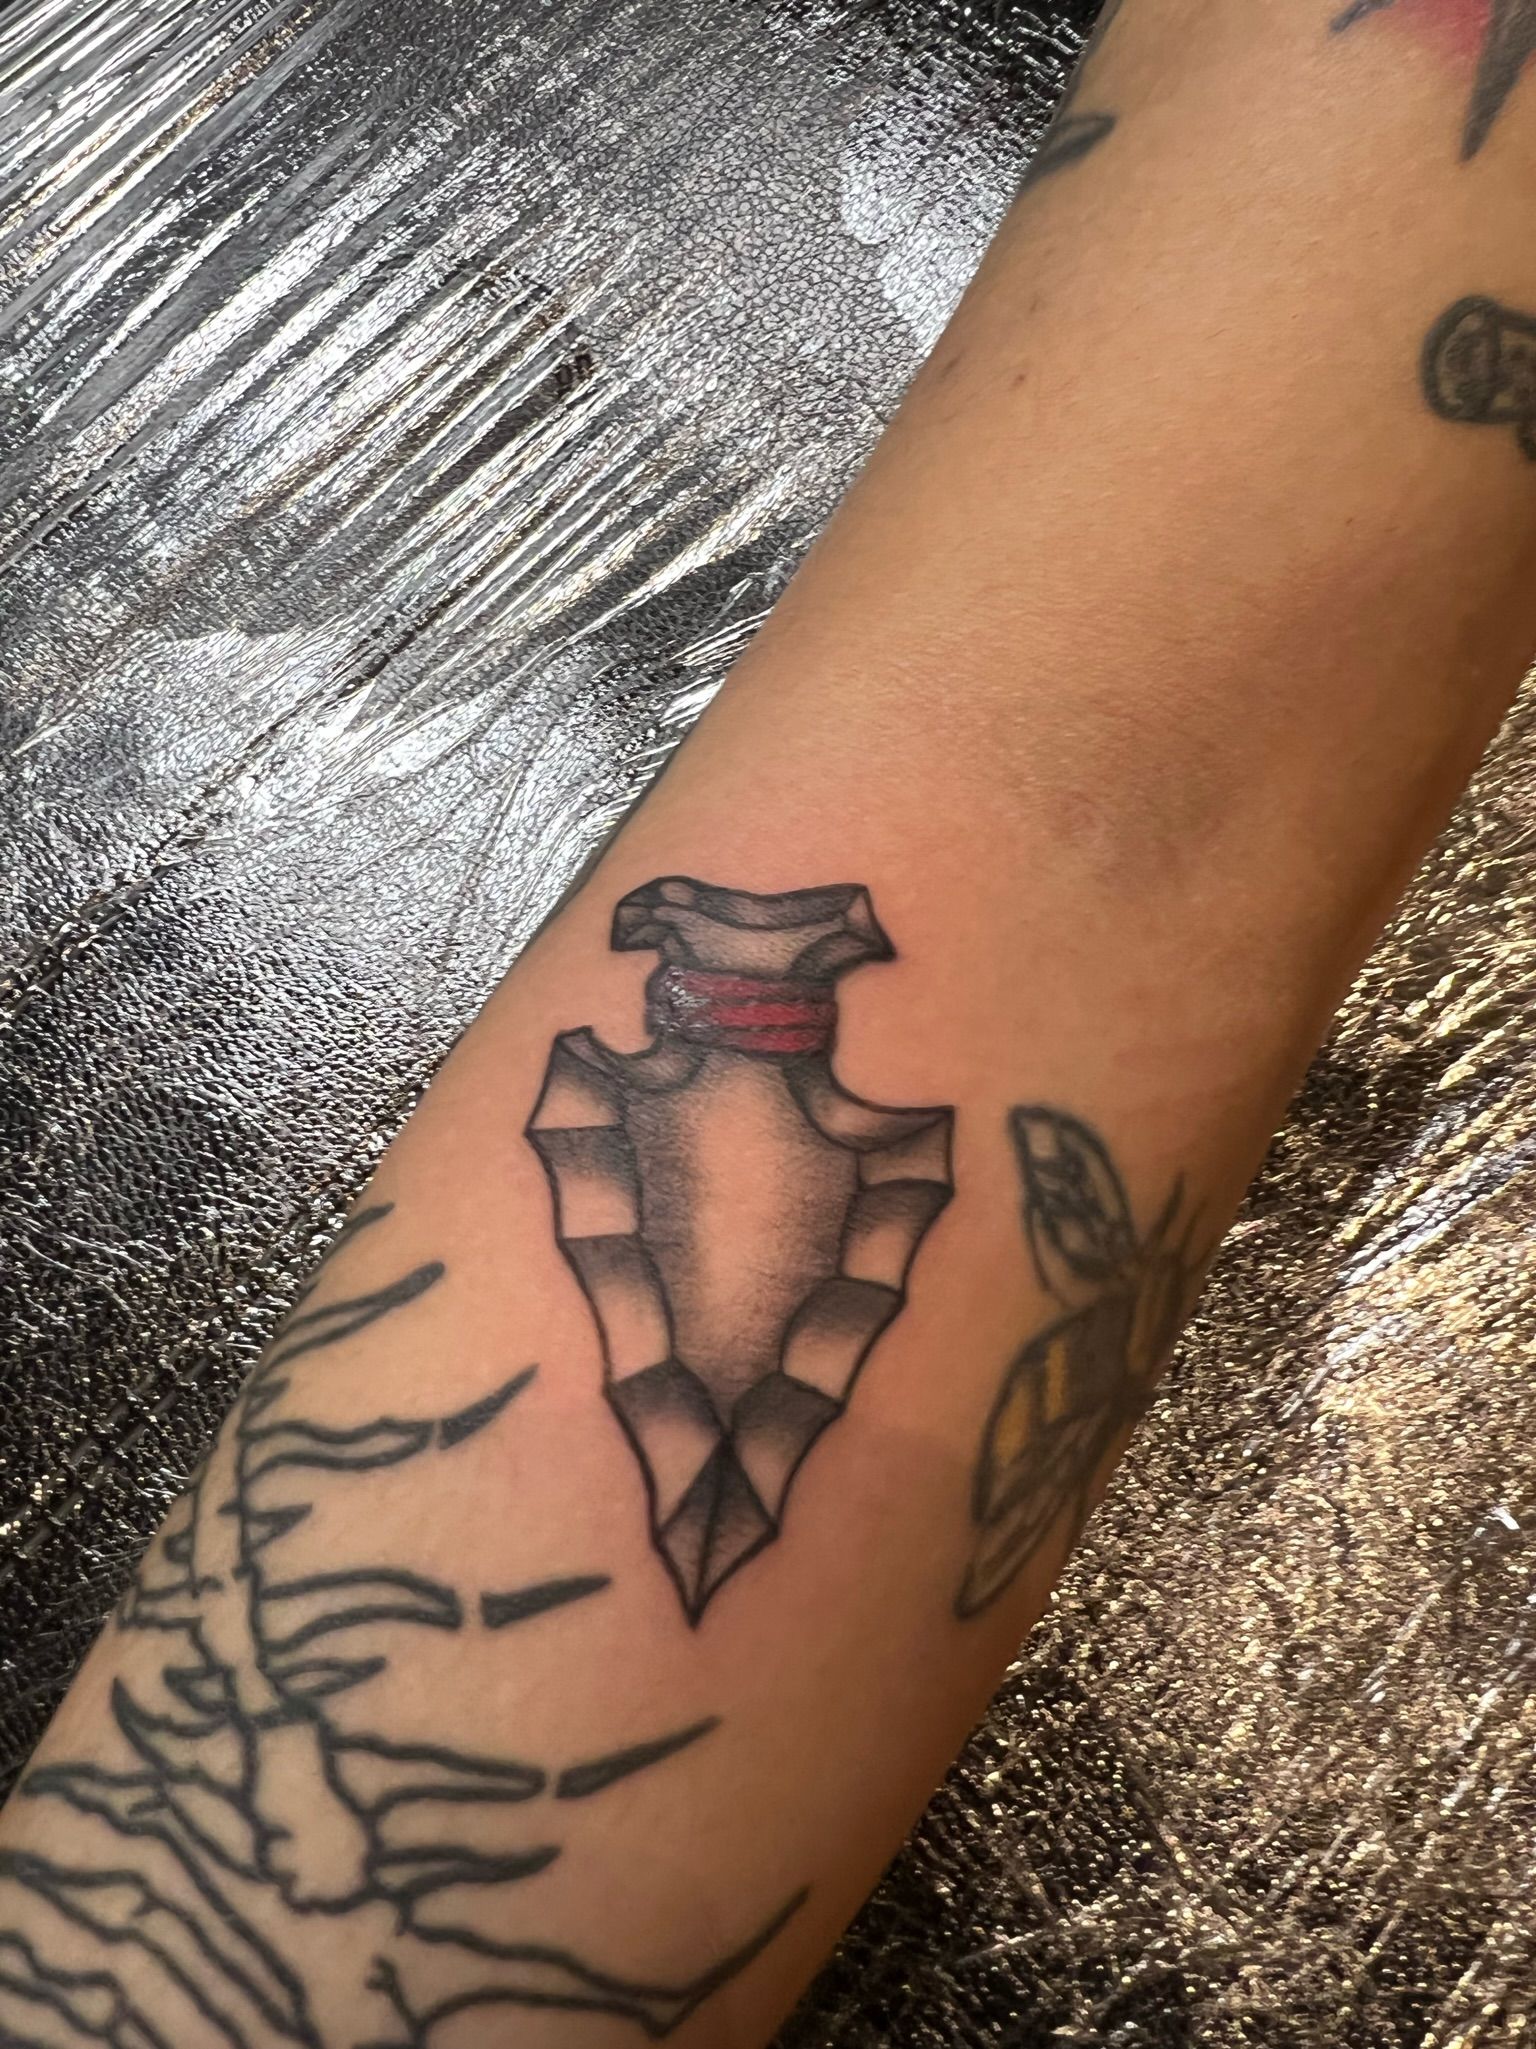 Arrow Head Tattoo - Best Tattoo Ideas Gallery